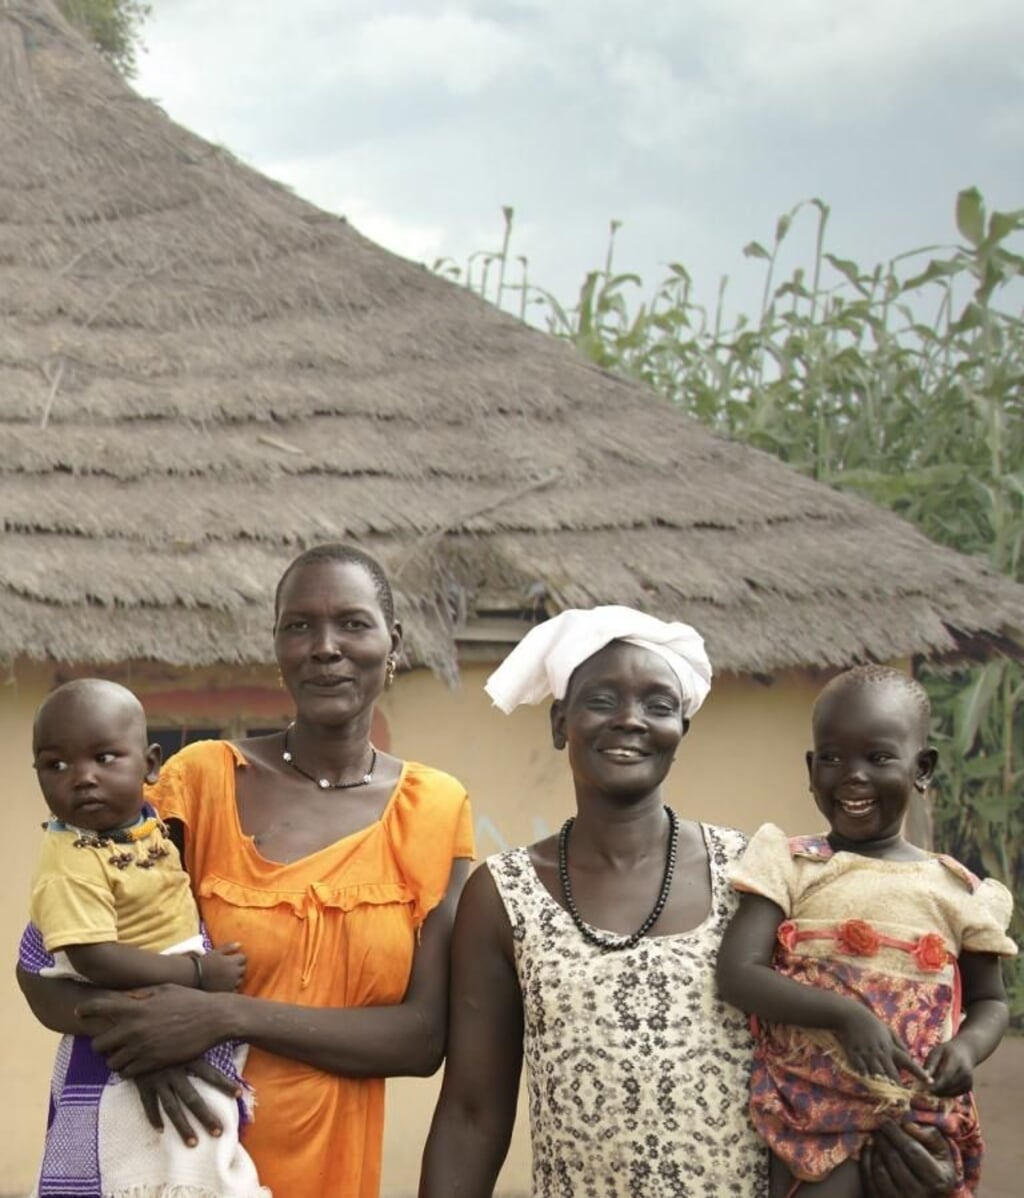 Voor Awut en Ajak in Zuid-Soedan is overleven een hele klus. Ze kunnen alle steun gebruiken om een stabiel bestaan op te bouwen.